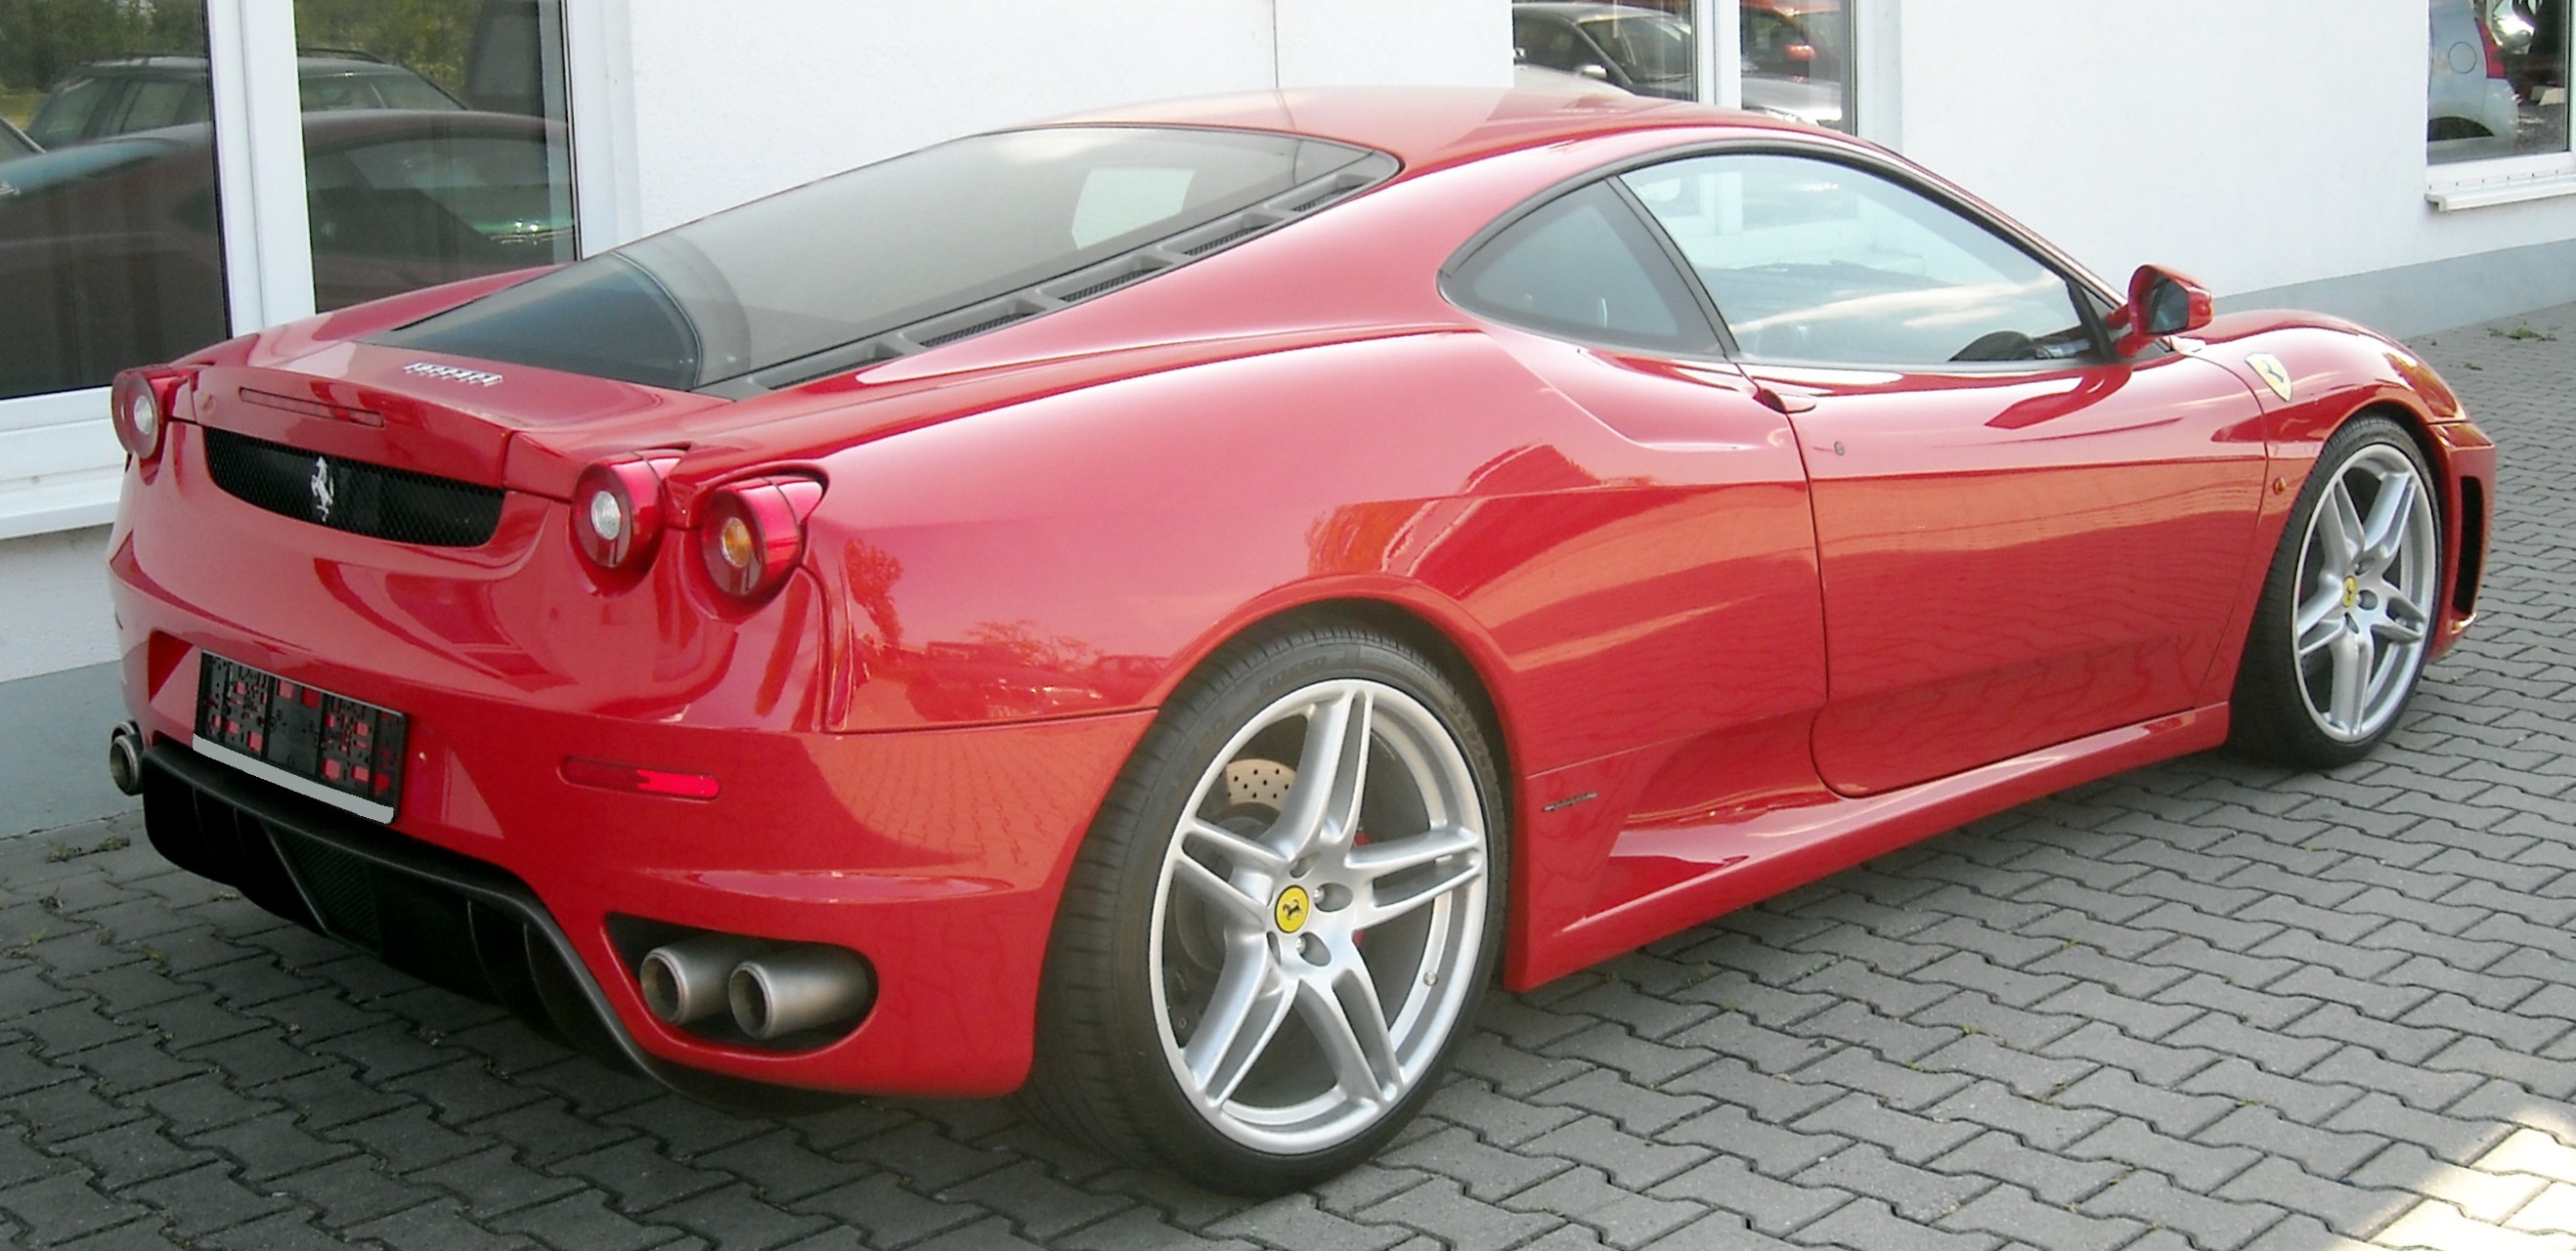 File:Ferrari F430 rear 20080605.jpg - Wikipedia